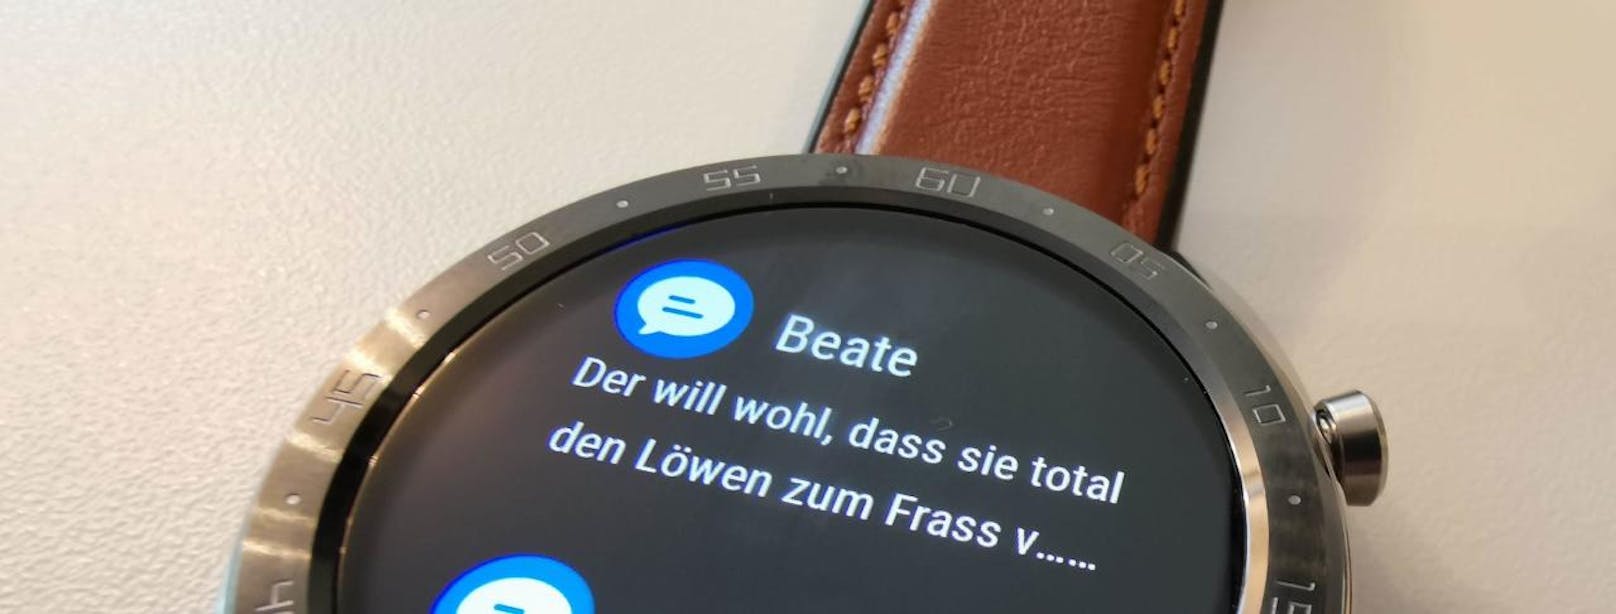 Auch Nachrichten und Text kann die Watch über ein gekoppeltes Smartphone anzeigen. Konnektivität gibt es aber nur per Bluetooth.